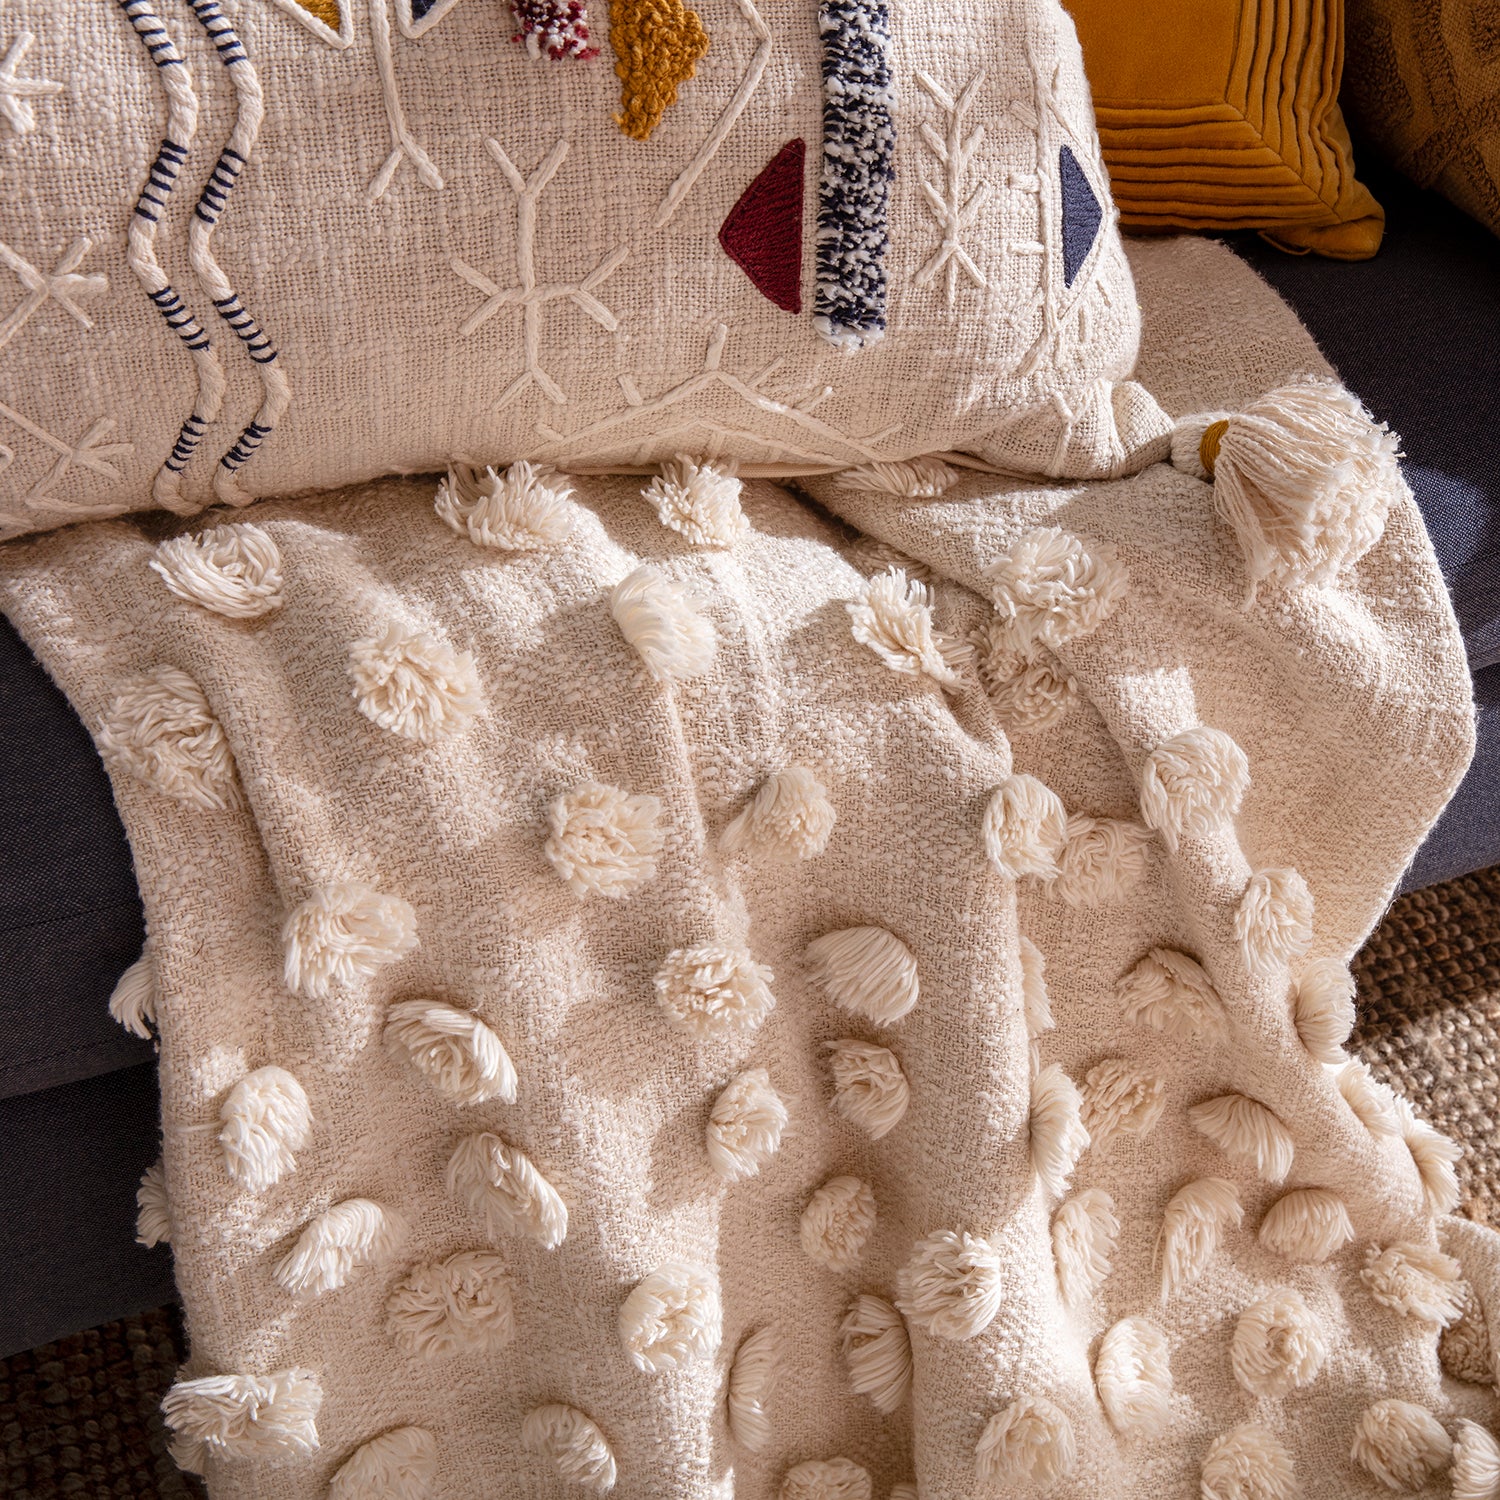 Plaid Lia Kas Australia, comprar online mantita para sofá o cama, color crudo natural. Cojines a juego. Sofá teja